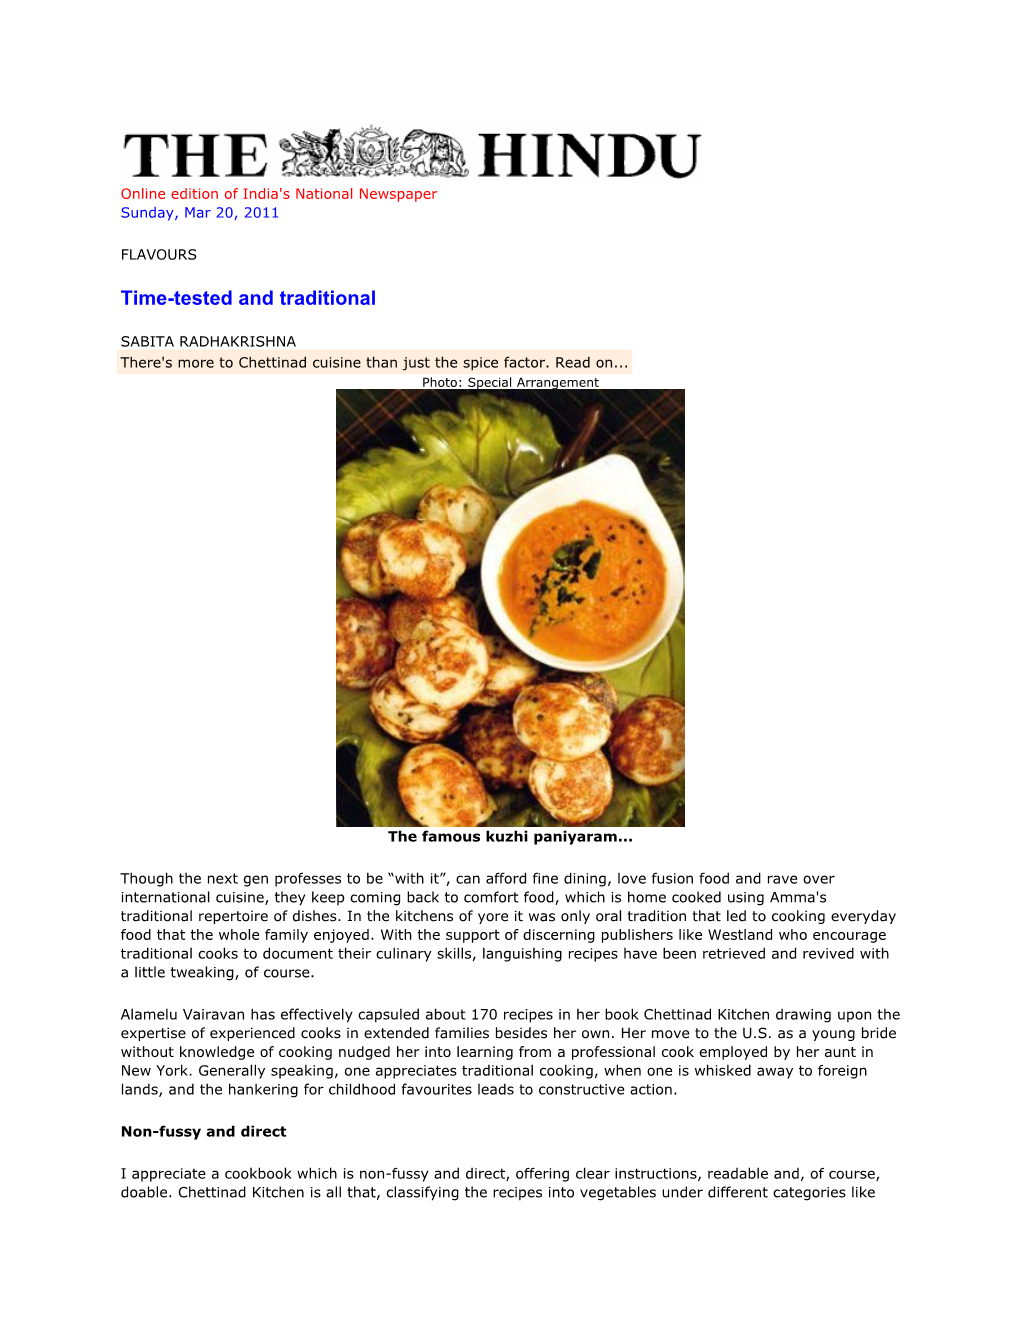 The Hindu-3-20-2011